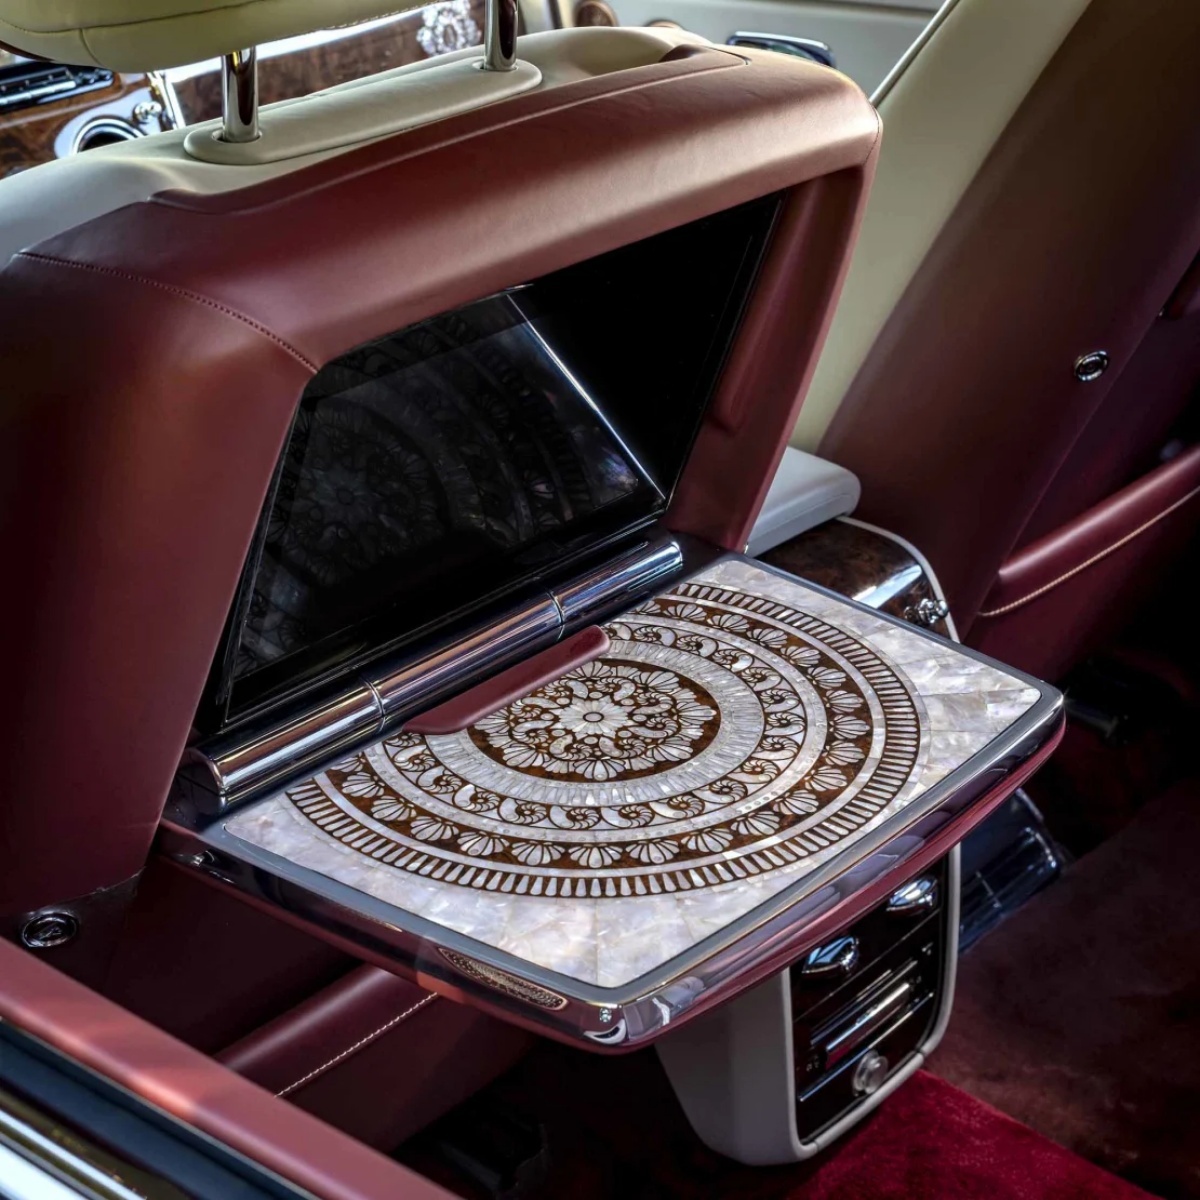 カスタマイズされたロールスロイスのＳＵＶ「カリナン」車内。真珠のインレイが折りたたみ式のトレーテーブルにはめこまれている/Courtesy Rolls-Royce